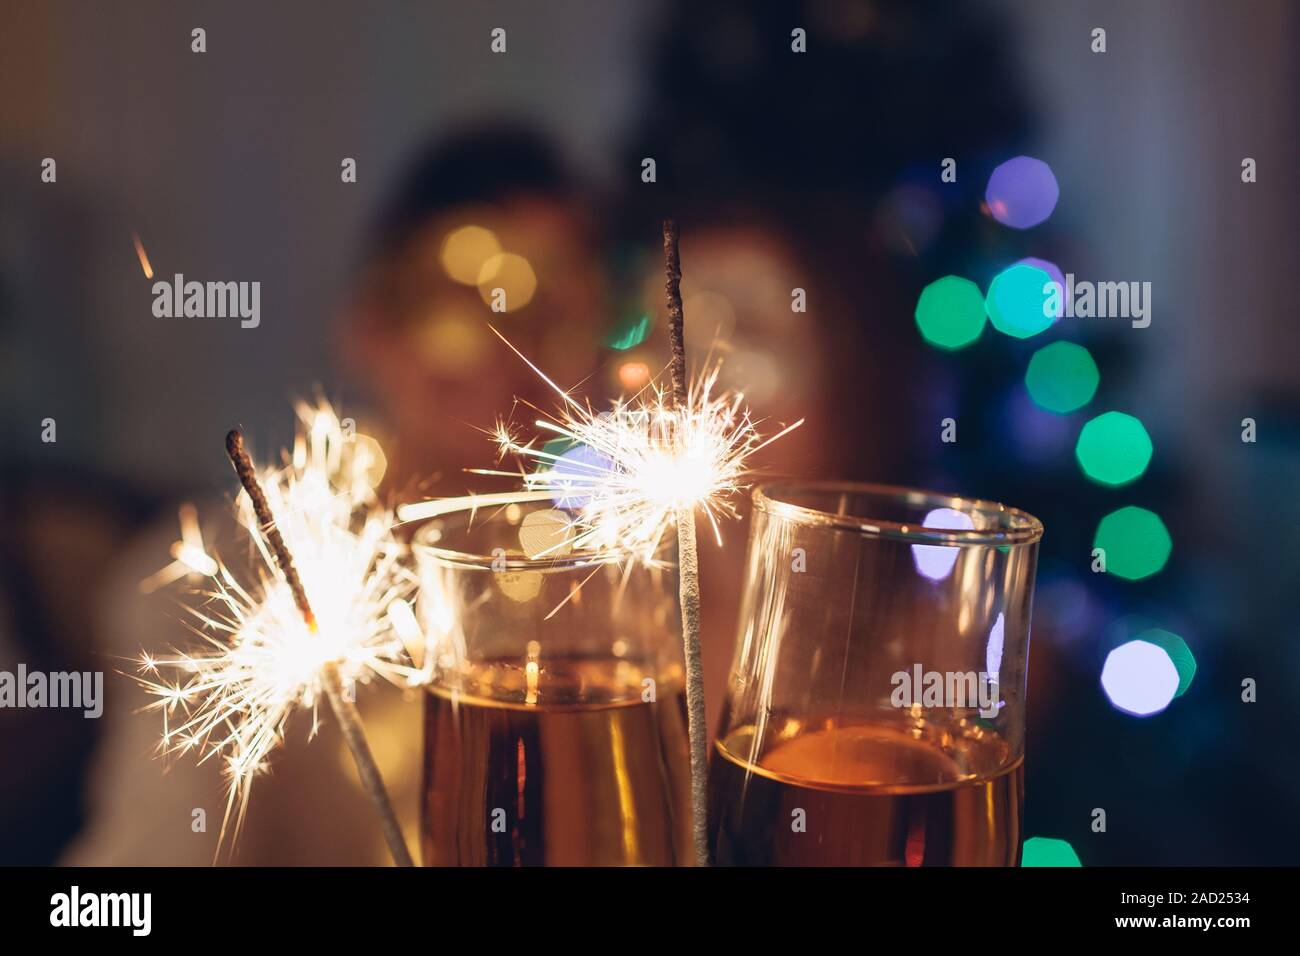 Weihnachten und Neujahr party Konzept. Verliebtes Paar brennende Wunderkerzen beleuchtete Weihnachtsbaum mit Champagner. Stockfoto